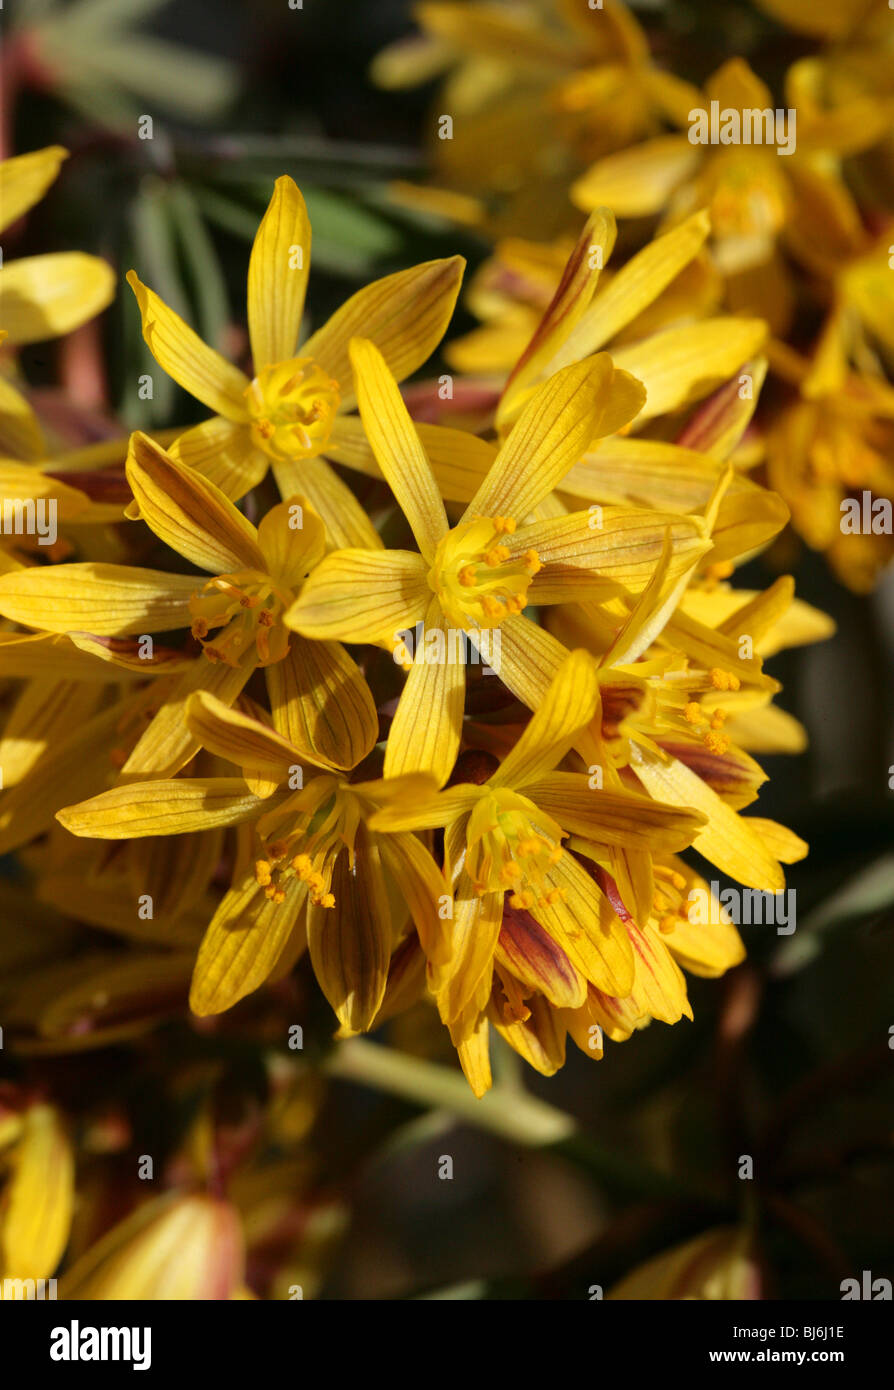 Gymnospermium albertii (Leontice albertii), Berberidaceae, Russian Central Asia Stock Photo